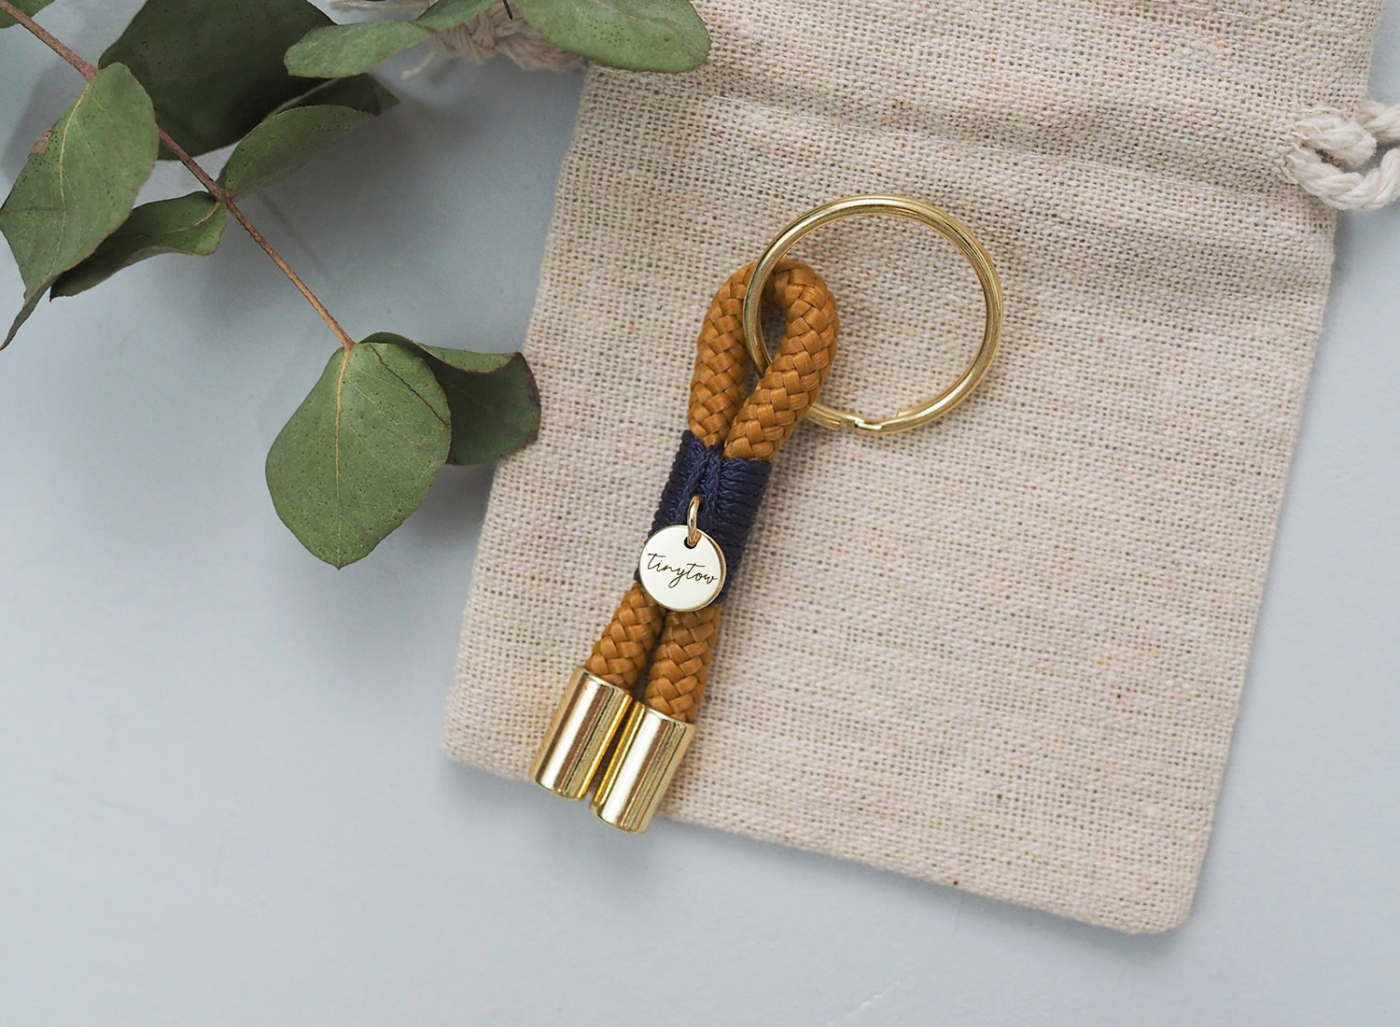 Schlüsselanhänger im Mini-Format aus Tauwerk in camel, blau mit goldfarbenen Details. Liebevoll verpackt und mit größter Sorgfalt hergestellt.